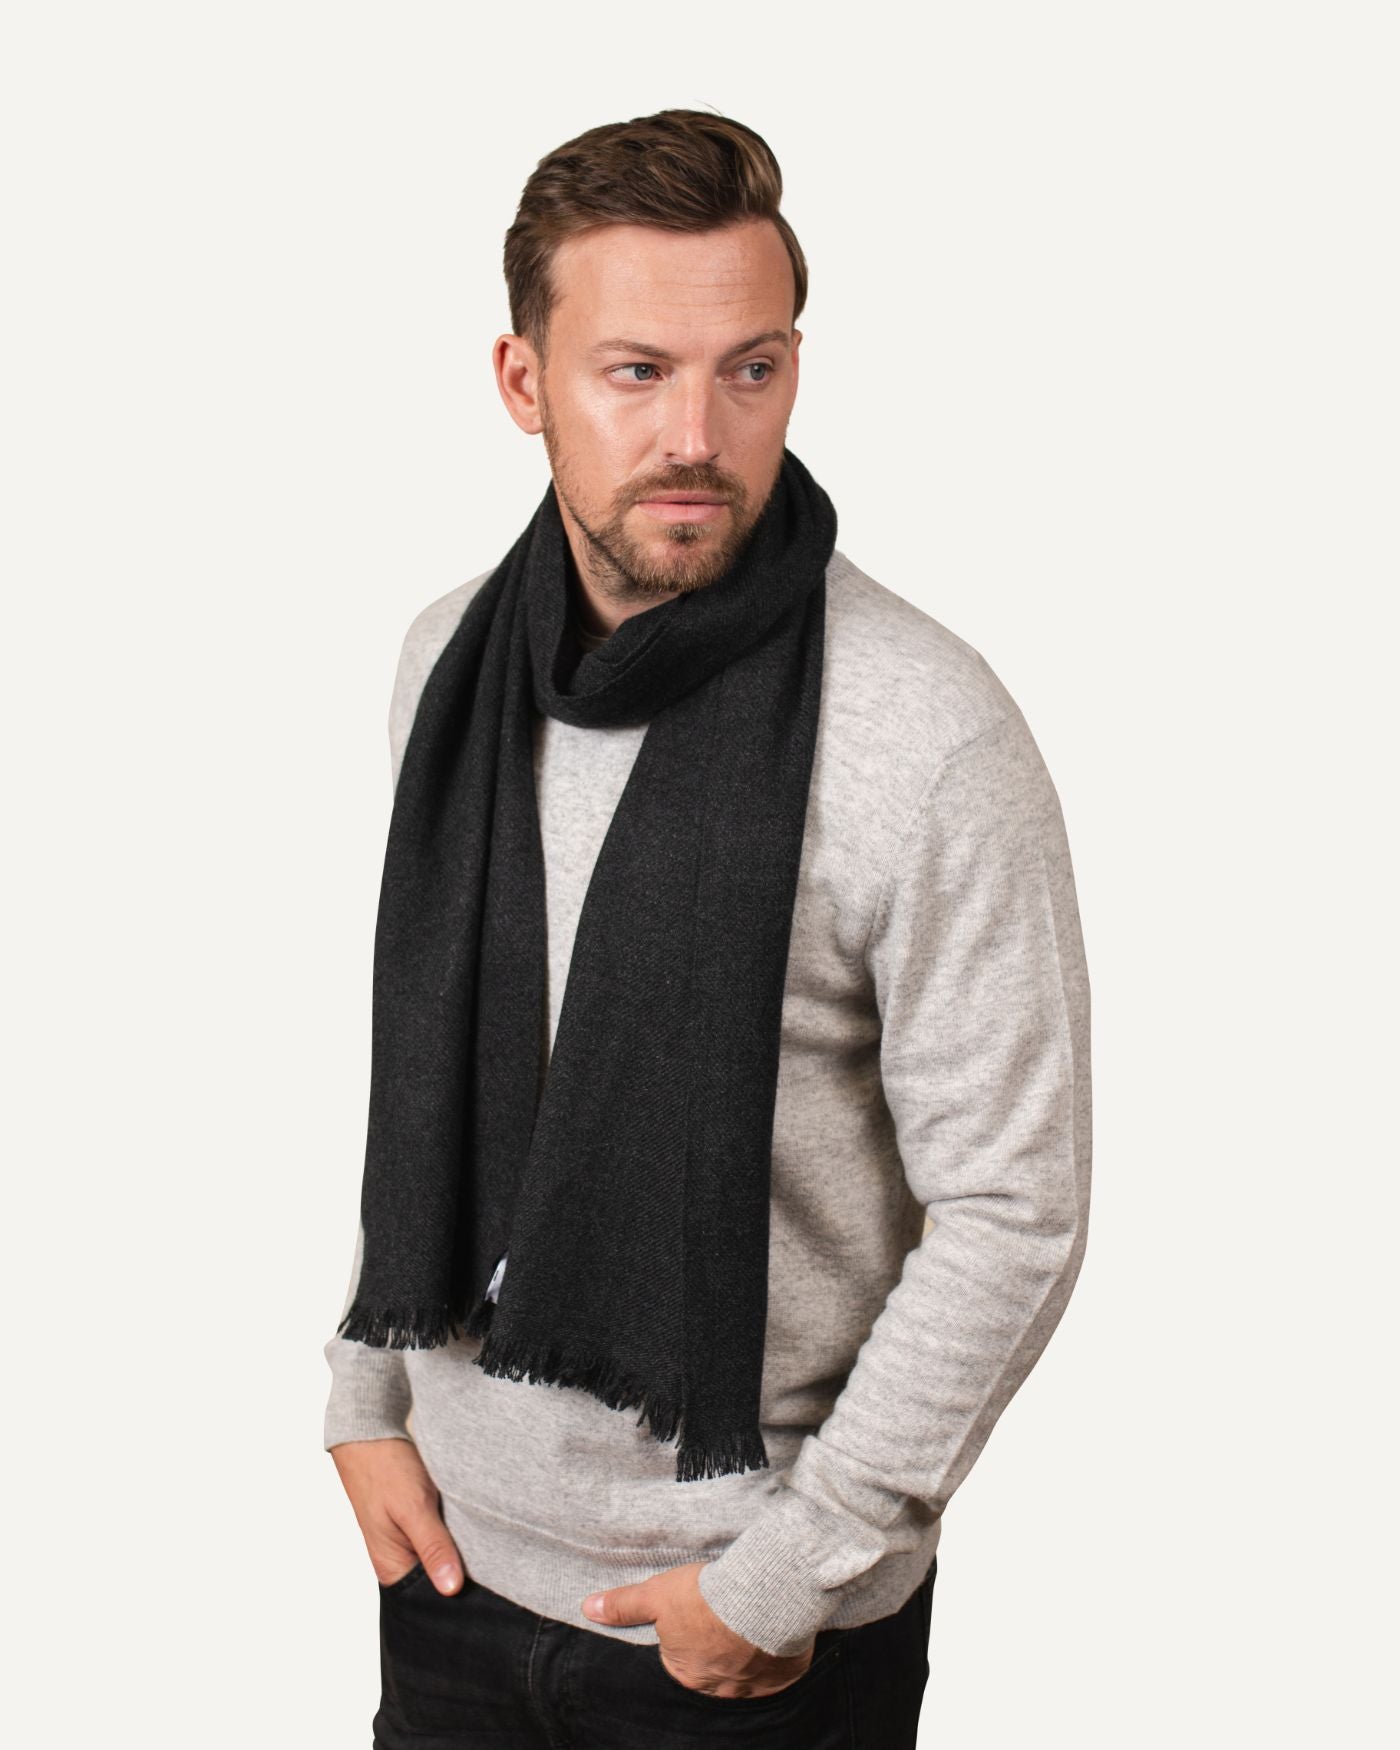 MOGLI & MARTINI - Woven | scarf men\'s cashmere